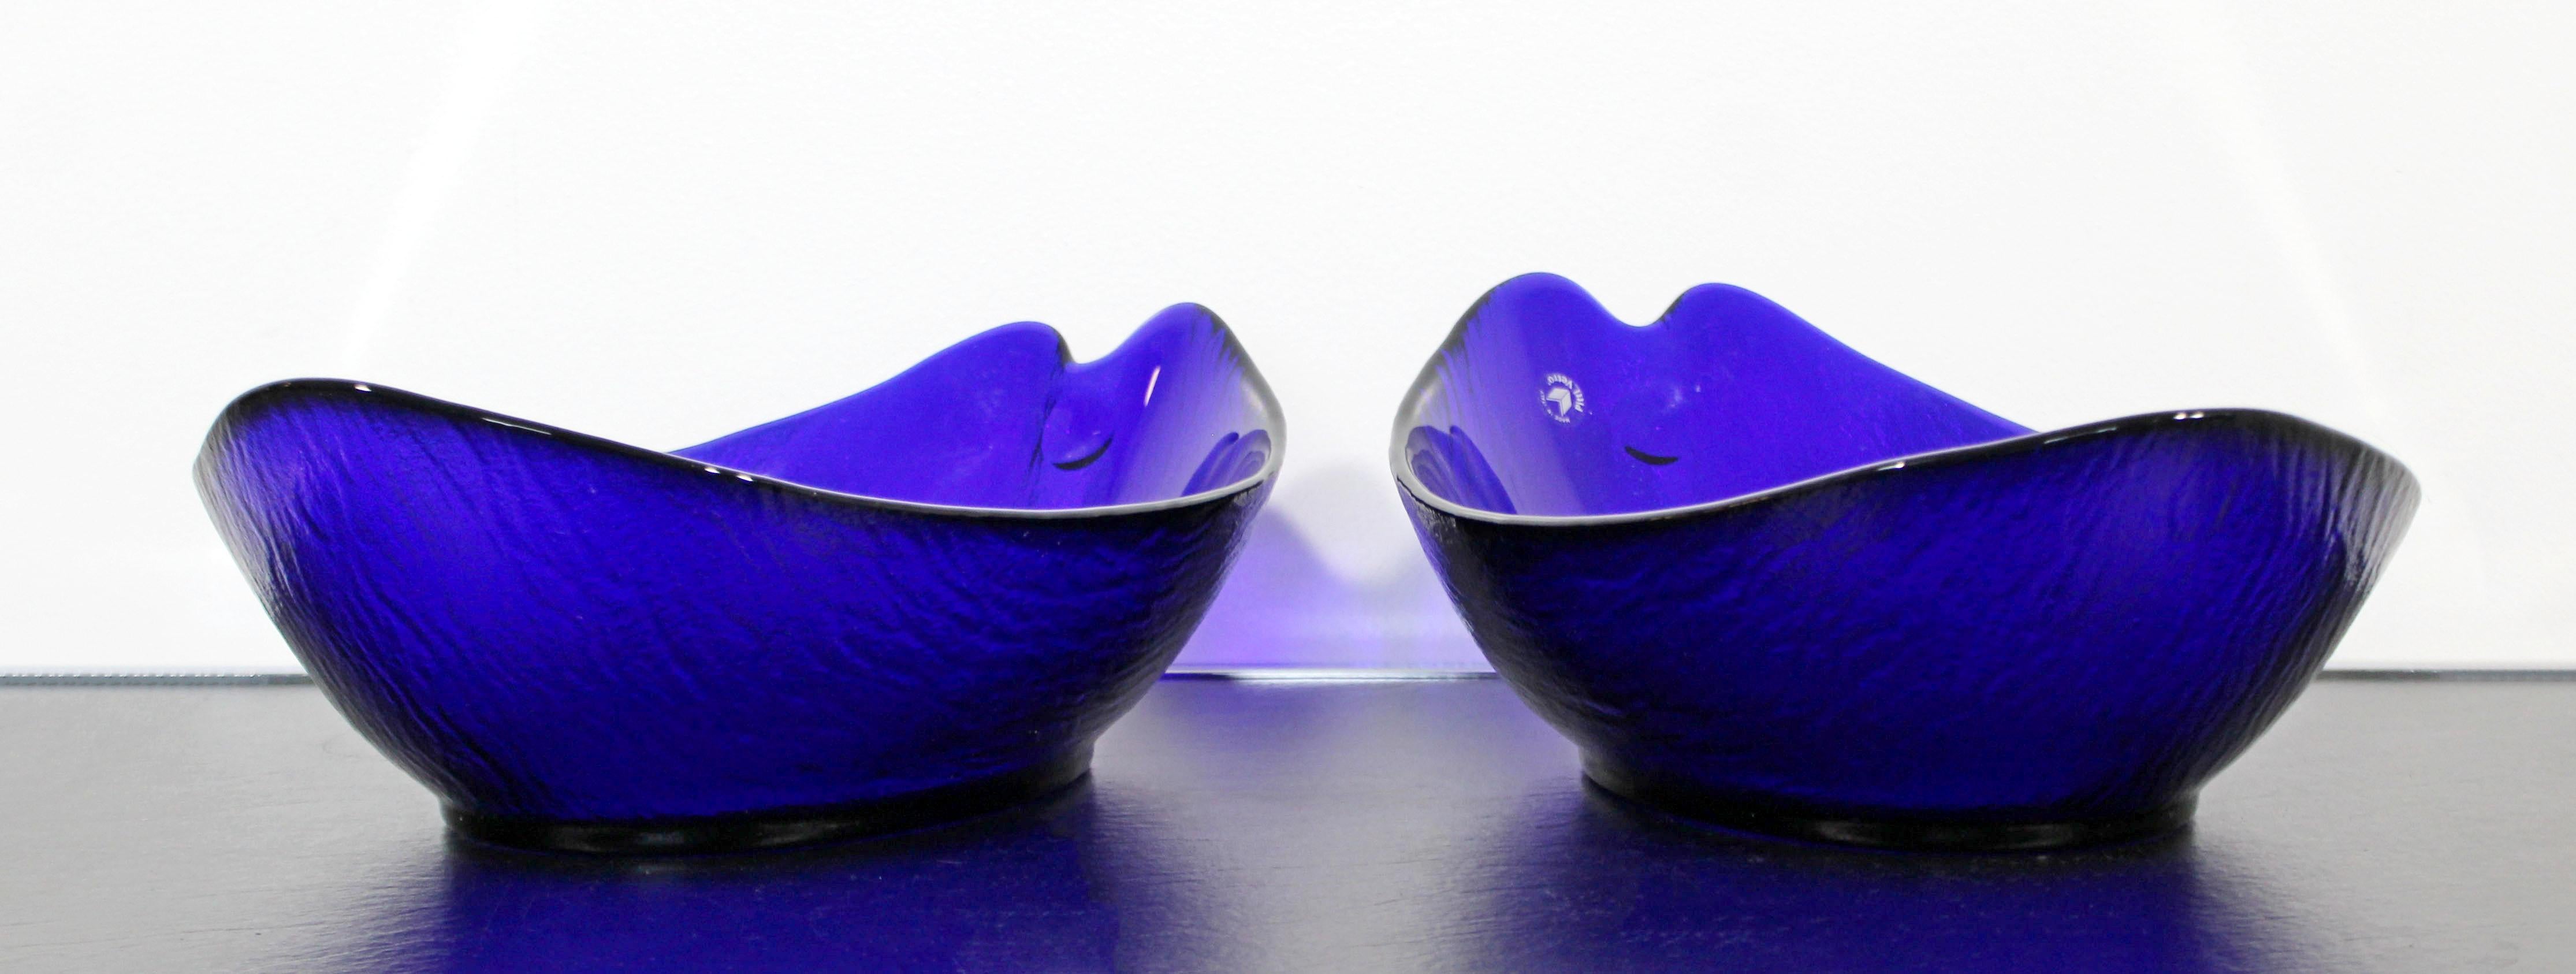 Mid-Century Modern Pair of Pitti Vetro Cobalt Murano Glass Bowls 1970s Italian 1